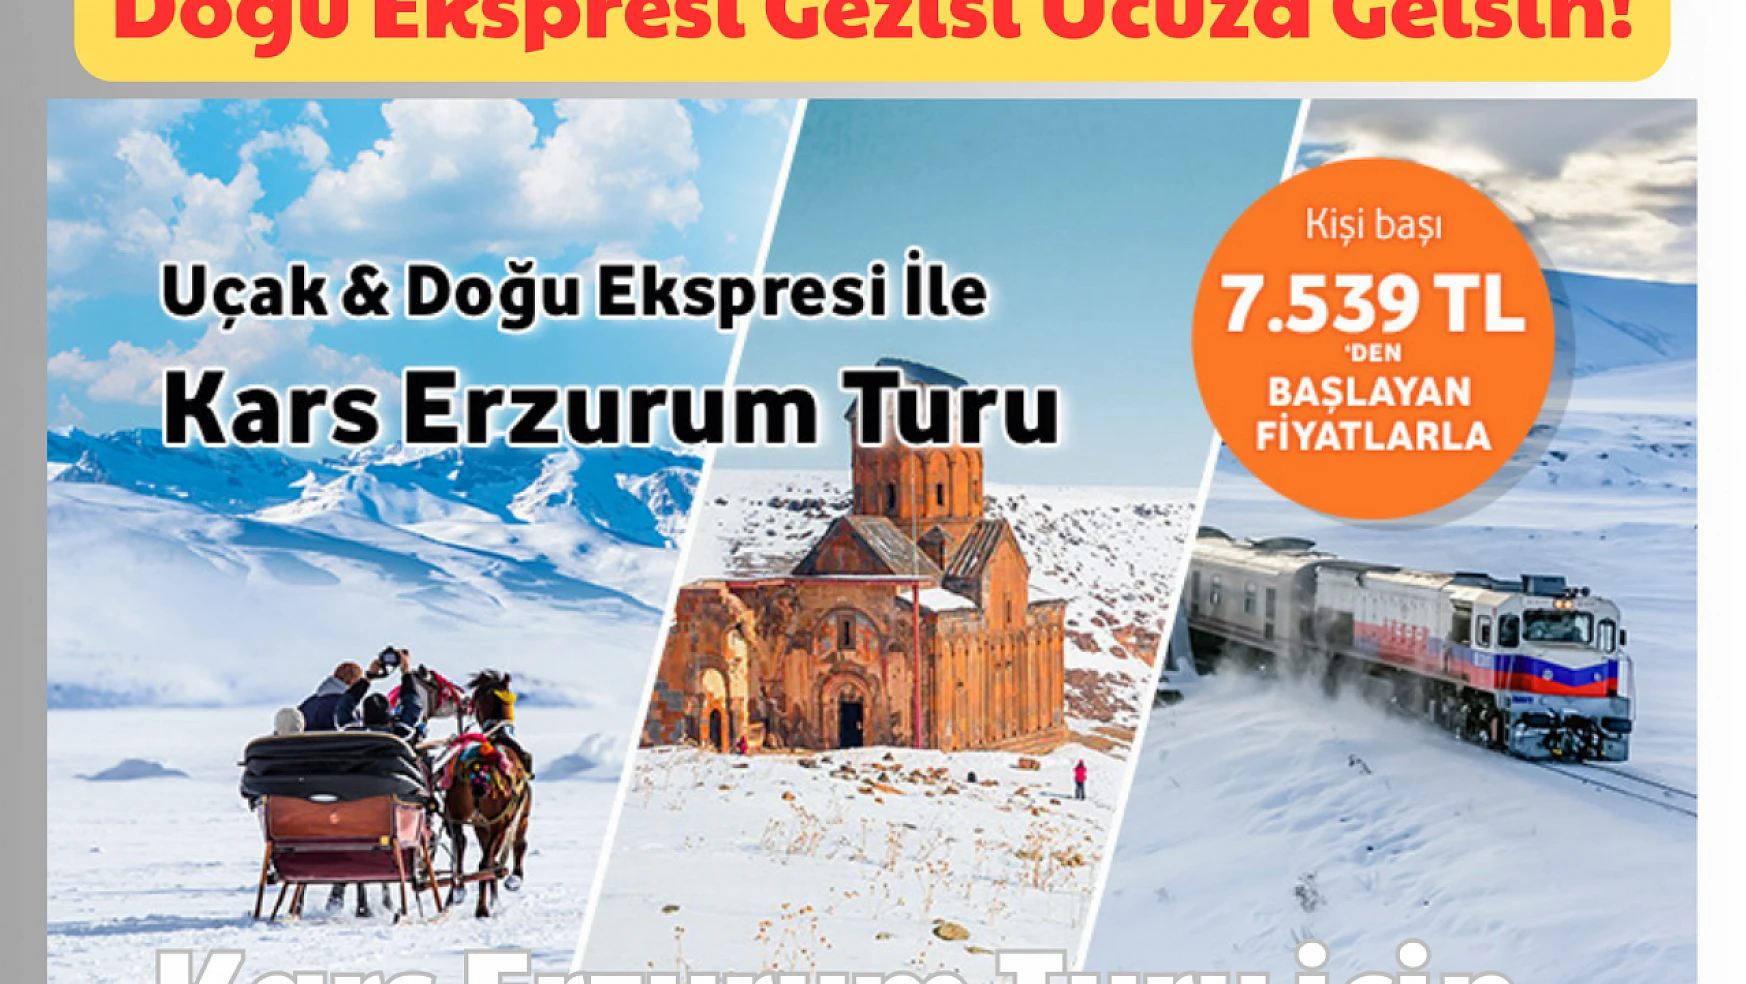 Doğu Ekspresi Gezisi Ucuza Gelsin: Kars Turları için!